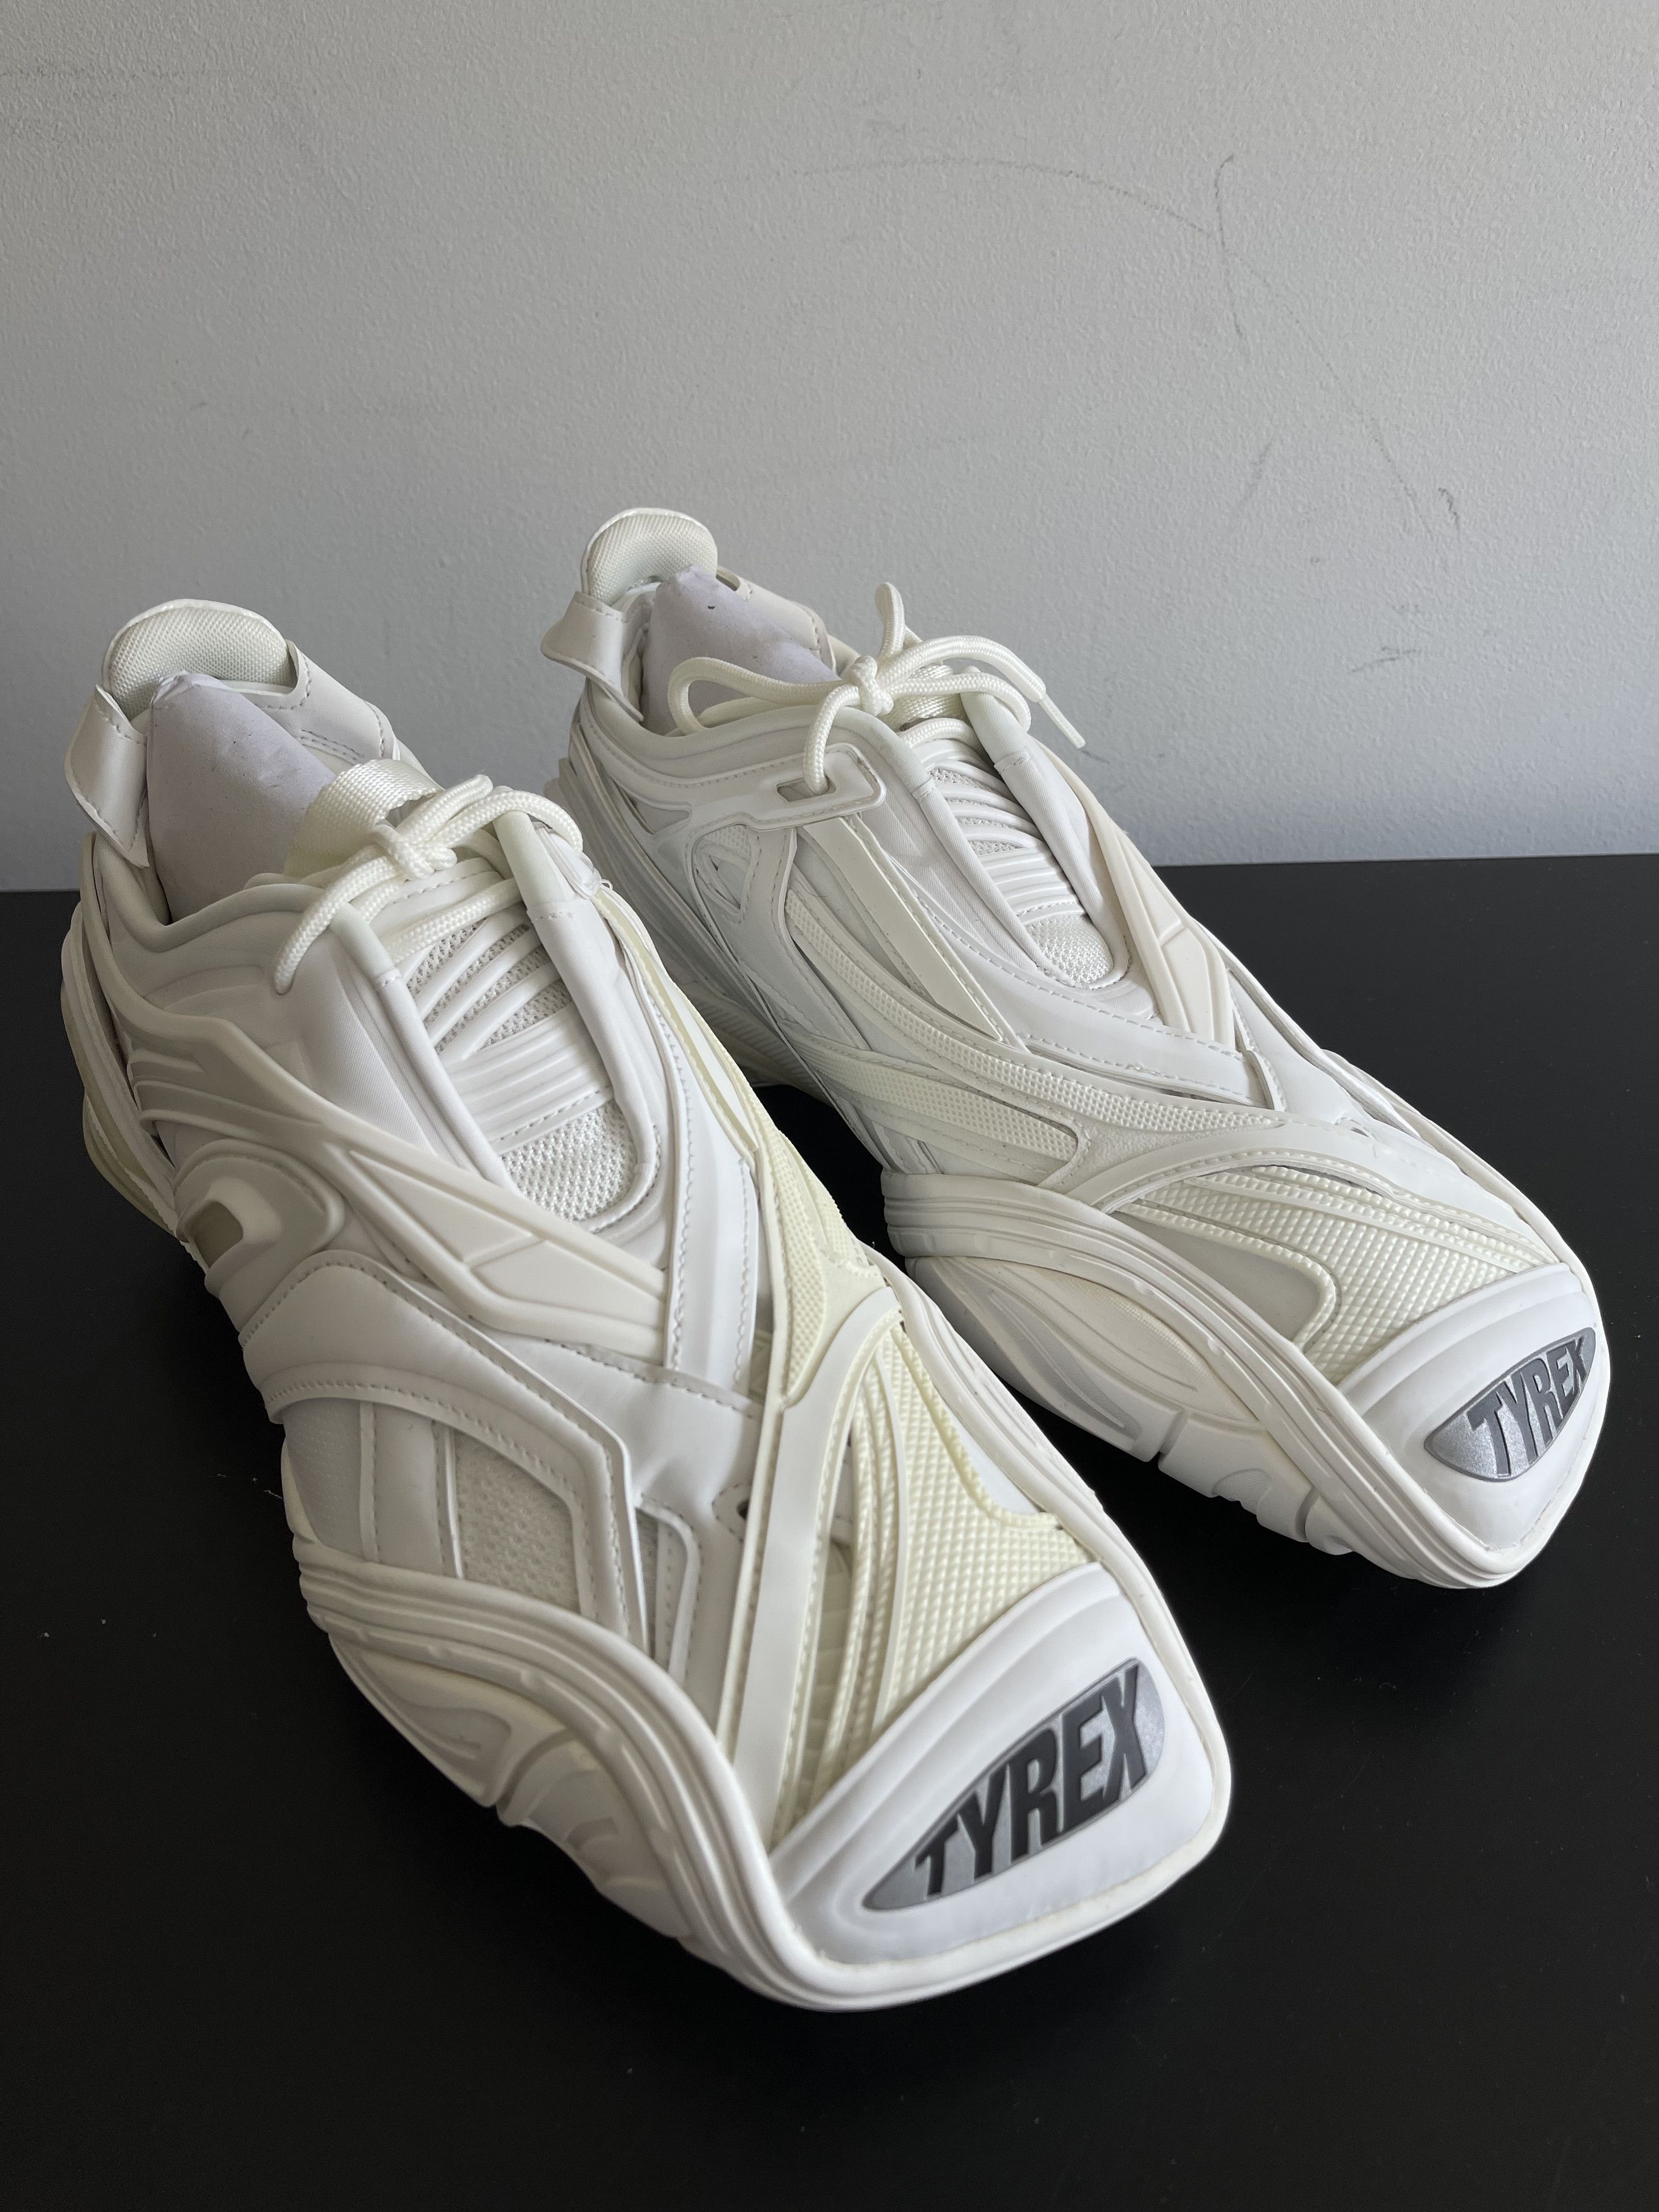 Balenciaga New Tyrex Sneakers (43) US 10 | Grailed